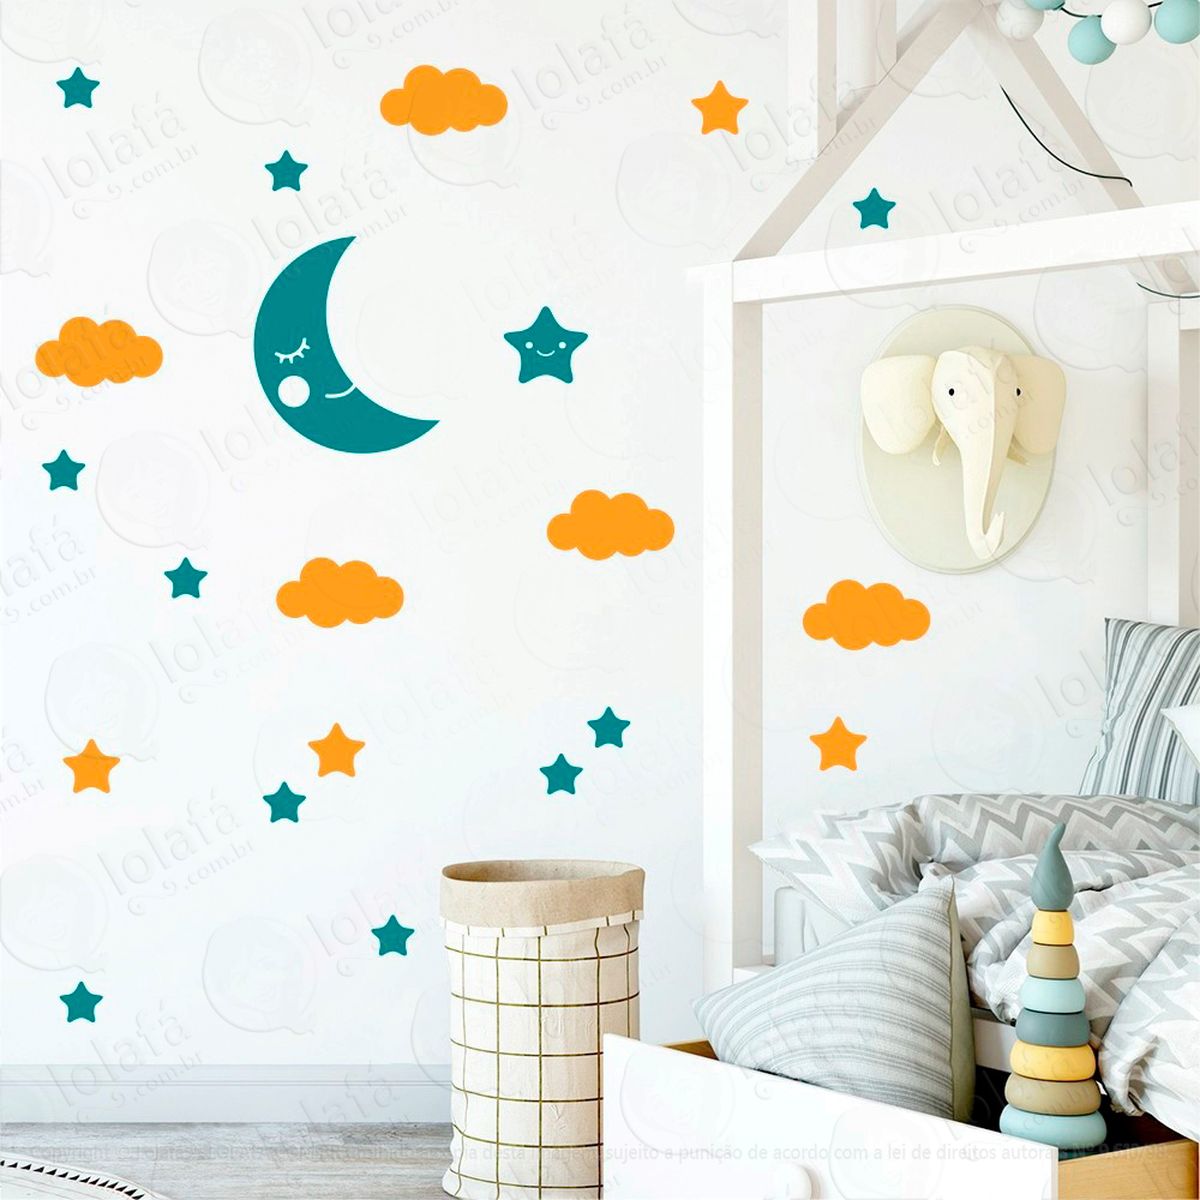 adesivos lua nuvens e estrelas 62 peças adesivos para quarto de bebê infantil - mod:625